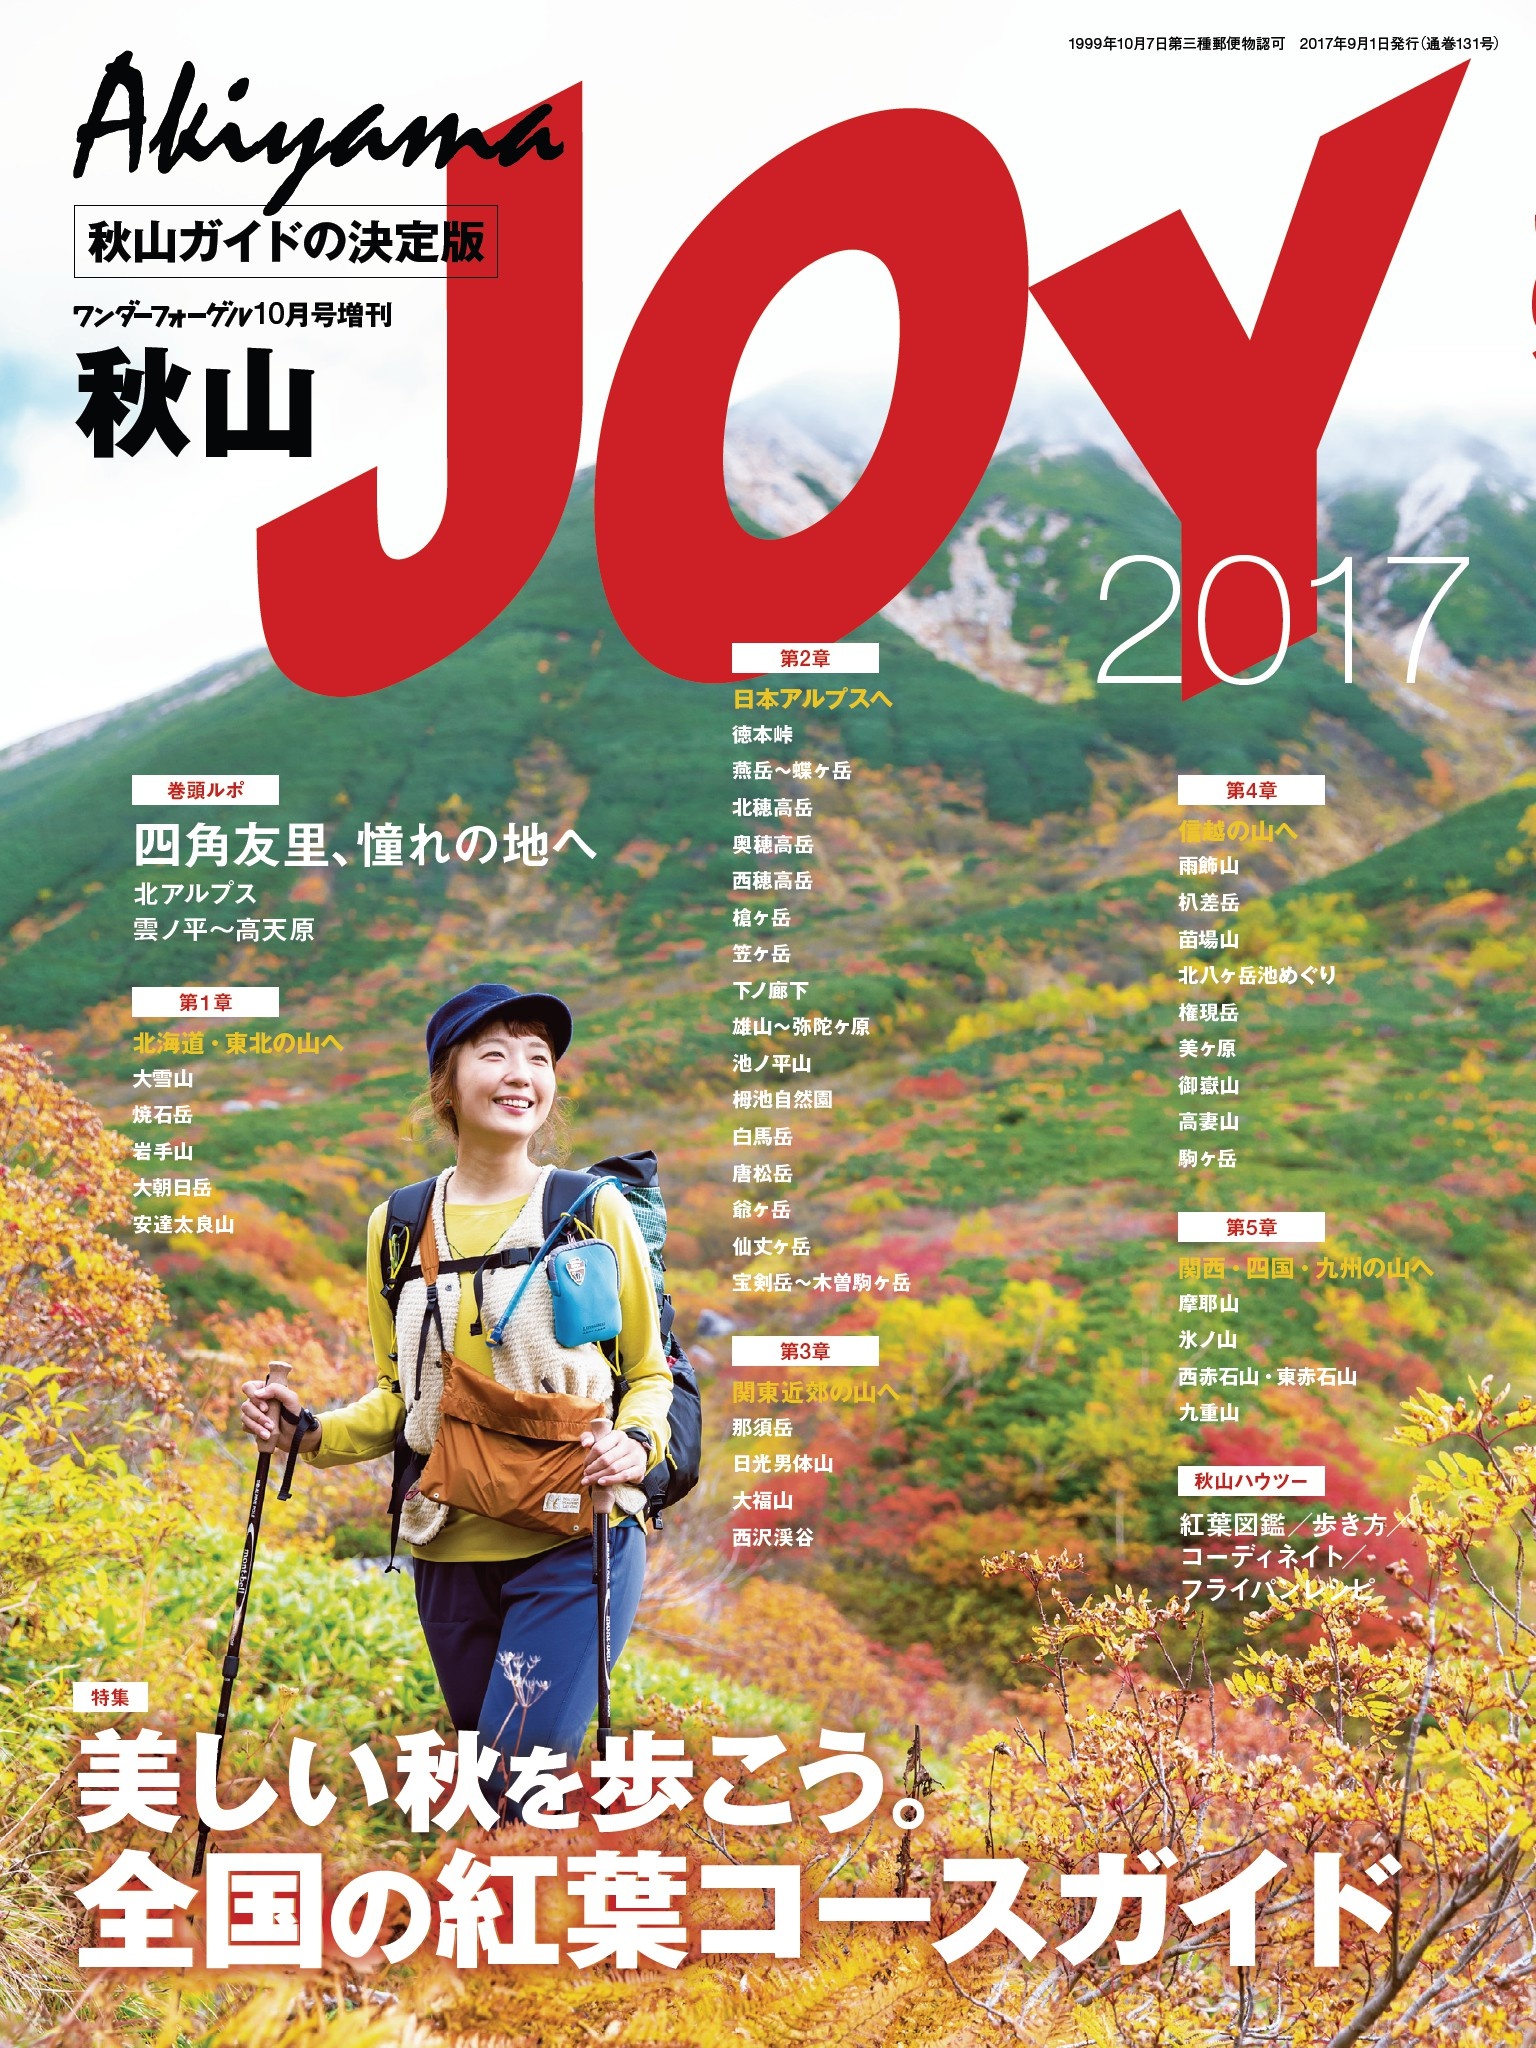 ワンダーフォーゲル 2017年 10月号 増刊 秋山JOY - ワンダーフォーゲル